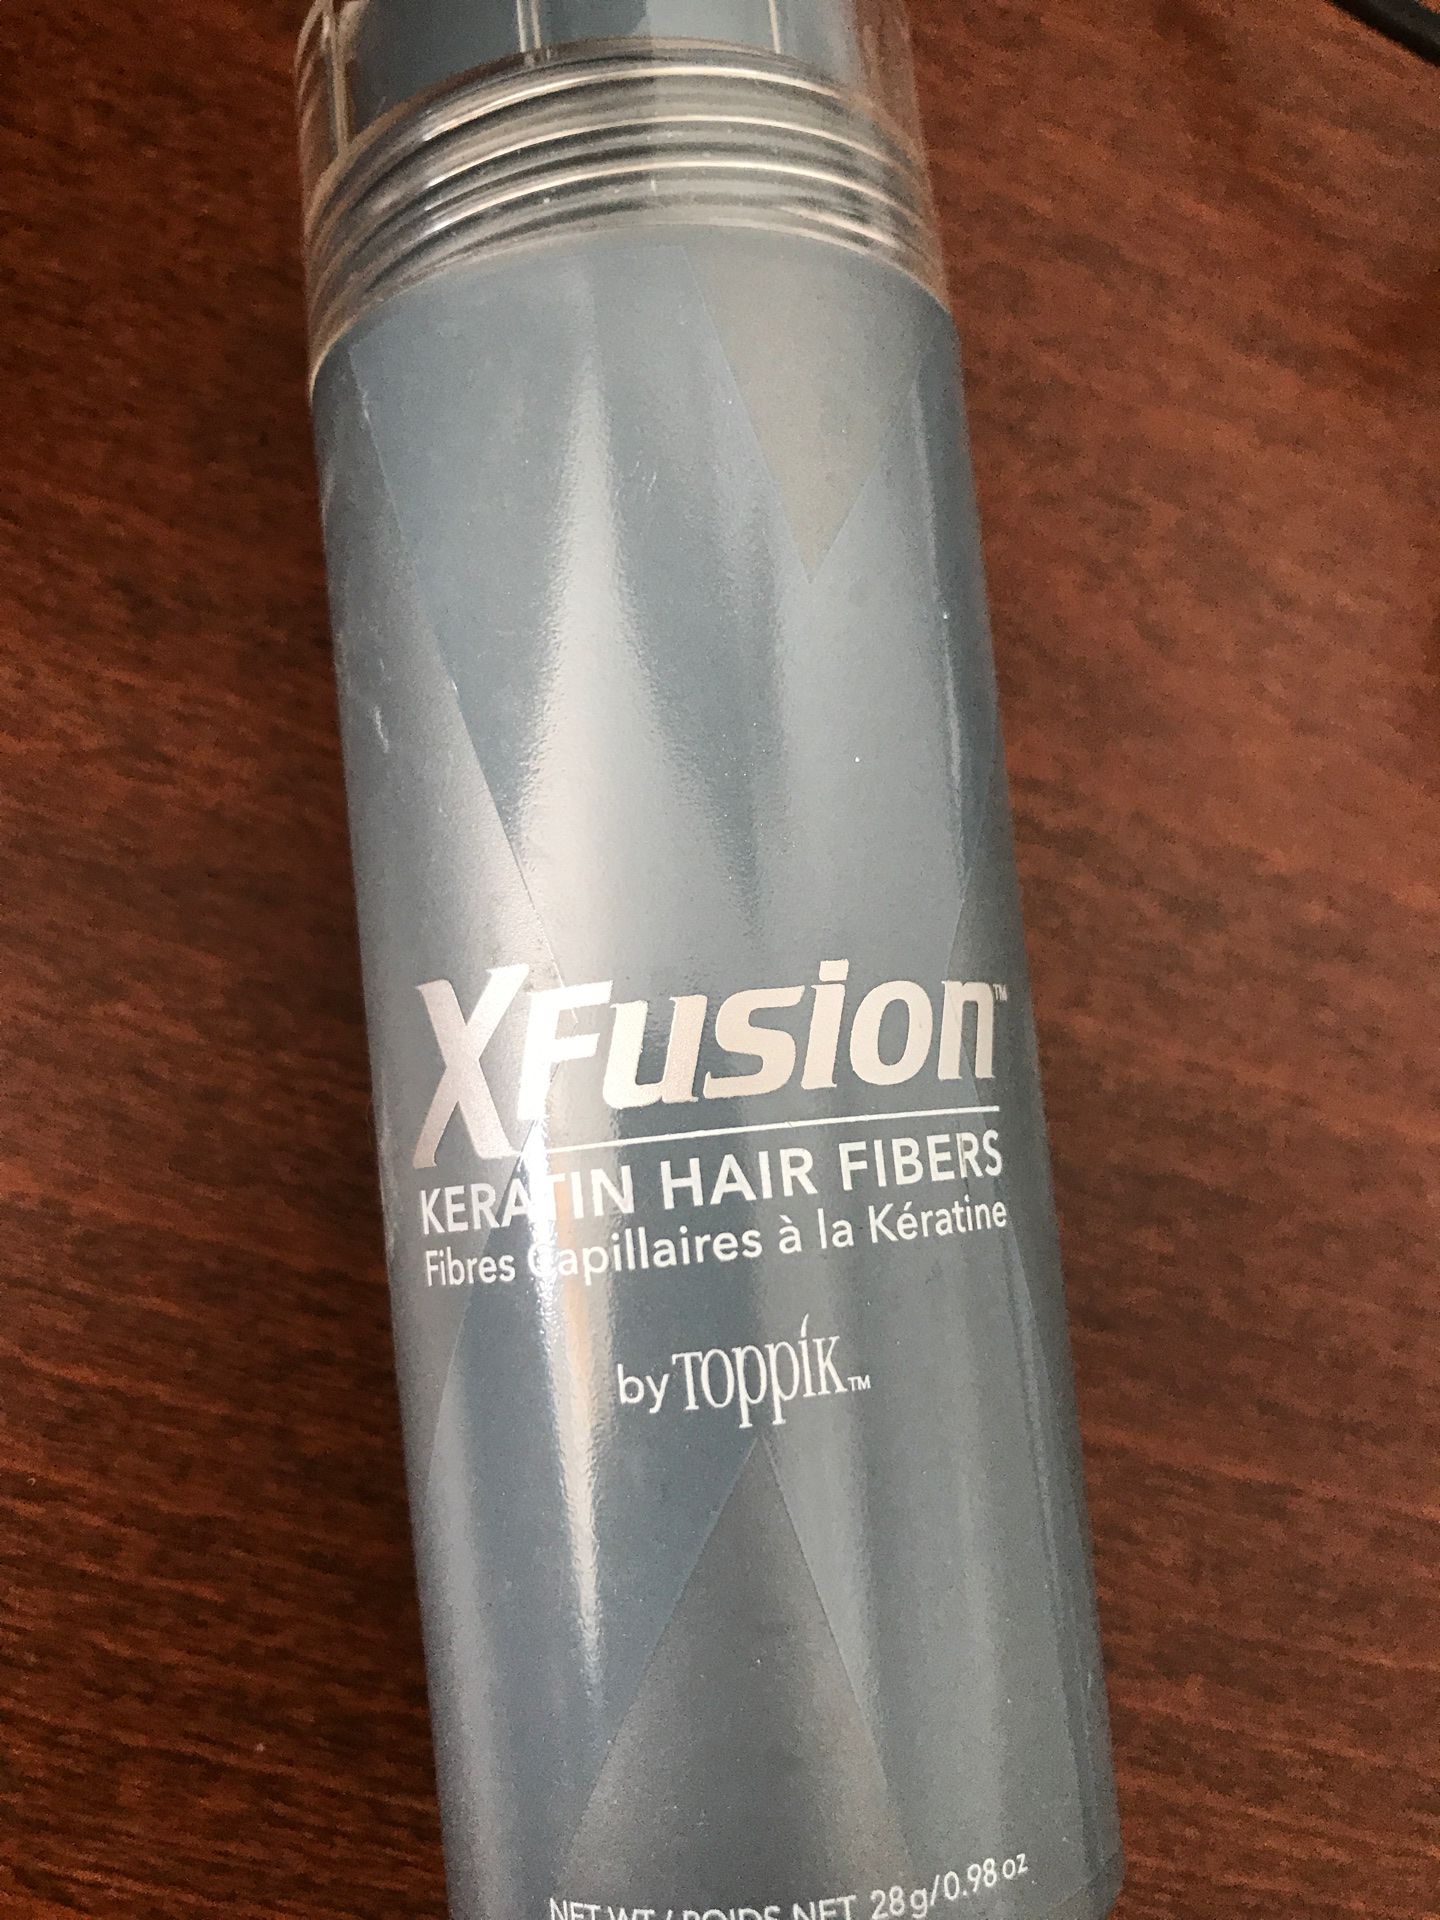 X Fusion Keratin Hair Fibers